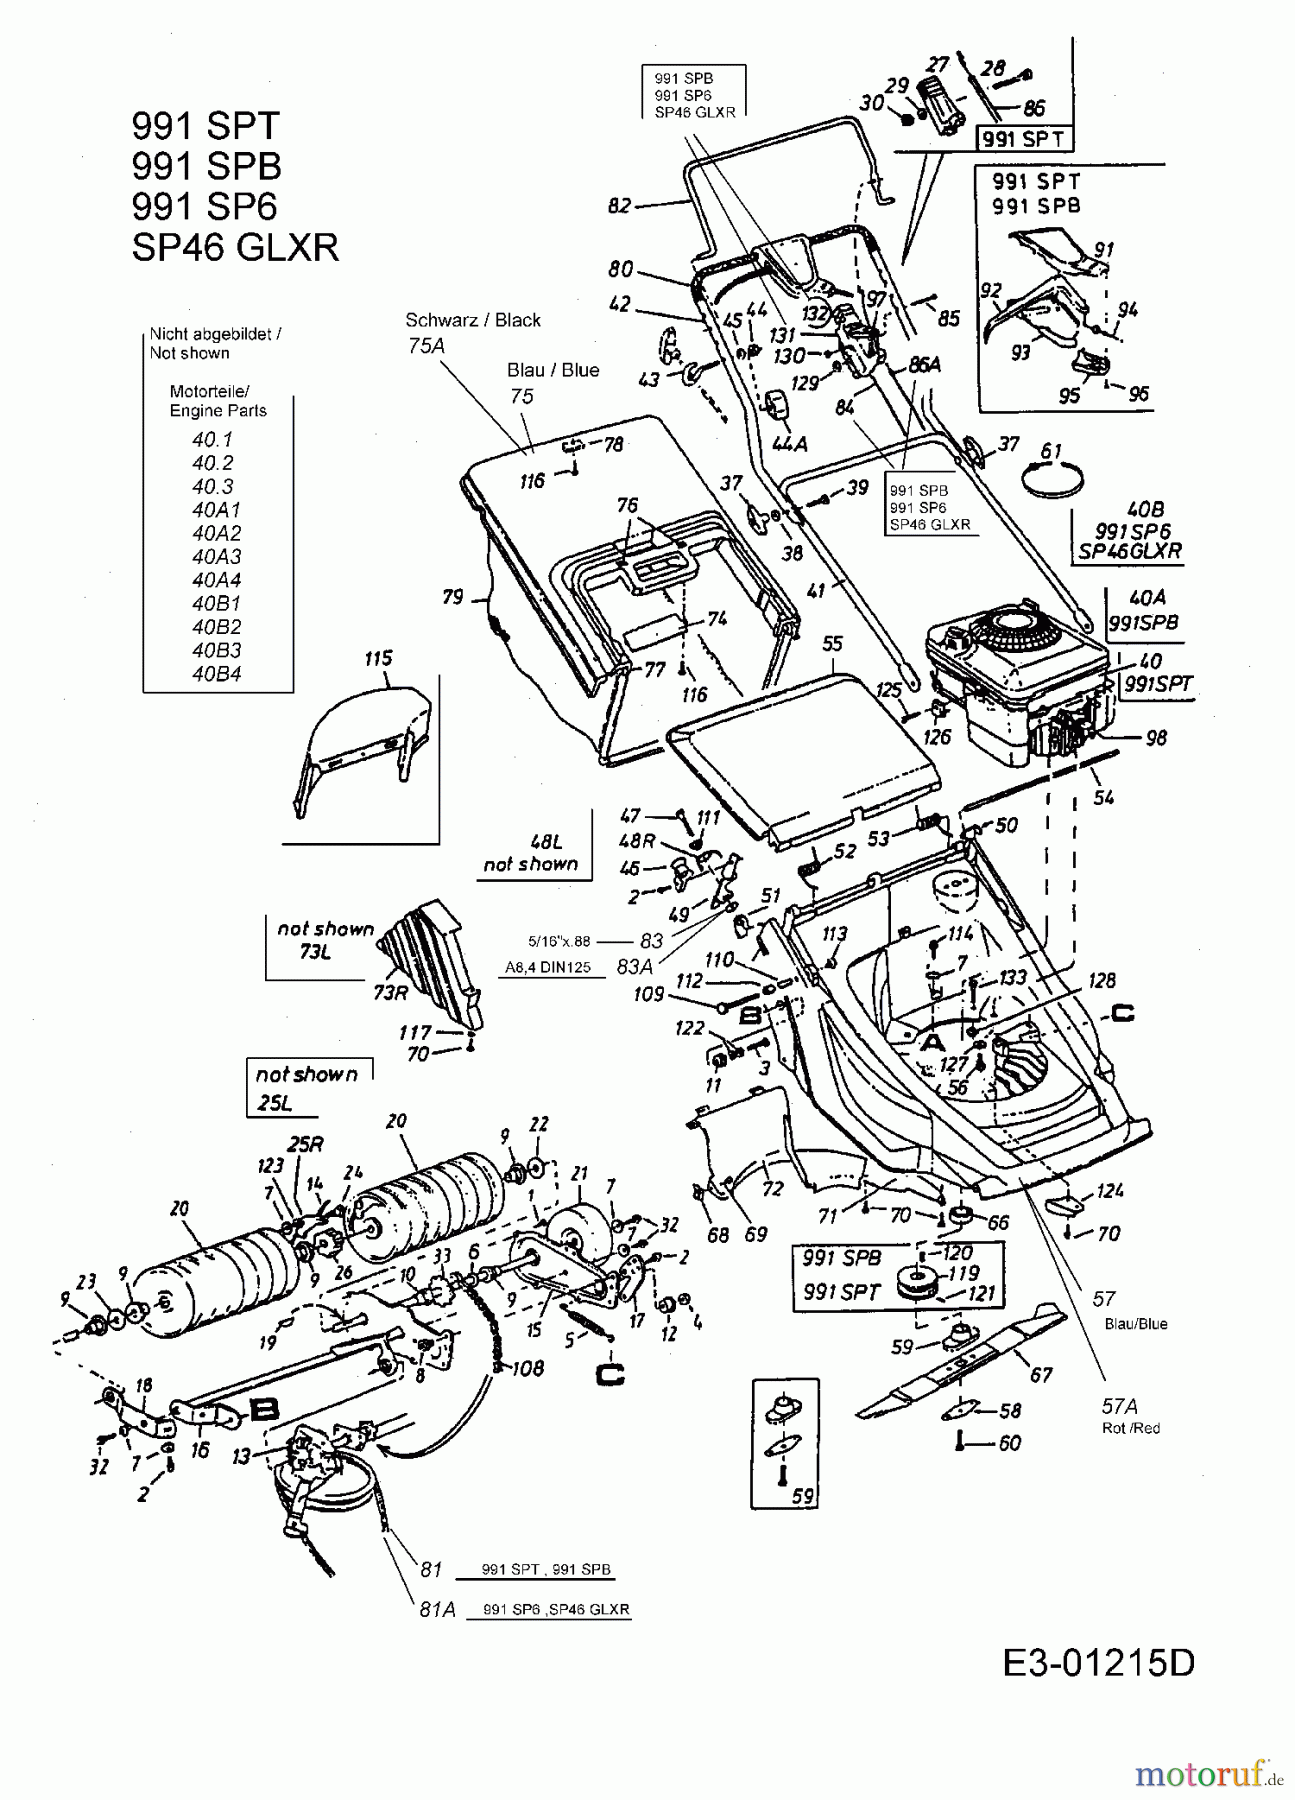  Lawnflite Motormäher mit Antrieb 991 SPT 12B-631A611  (2001) Grundgerät